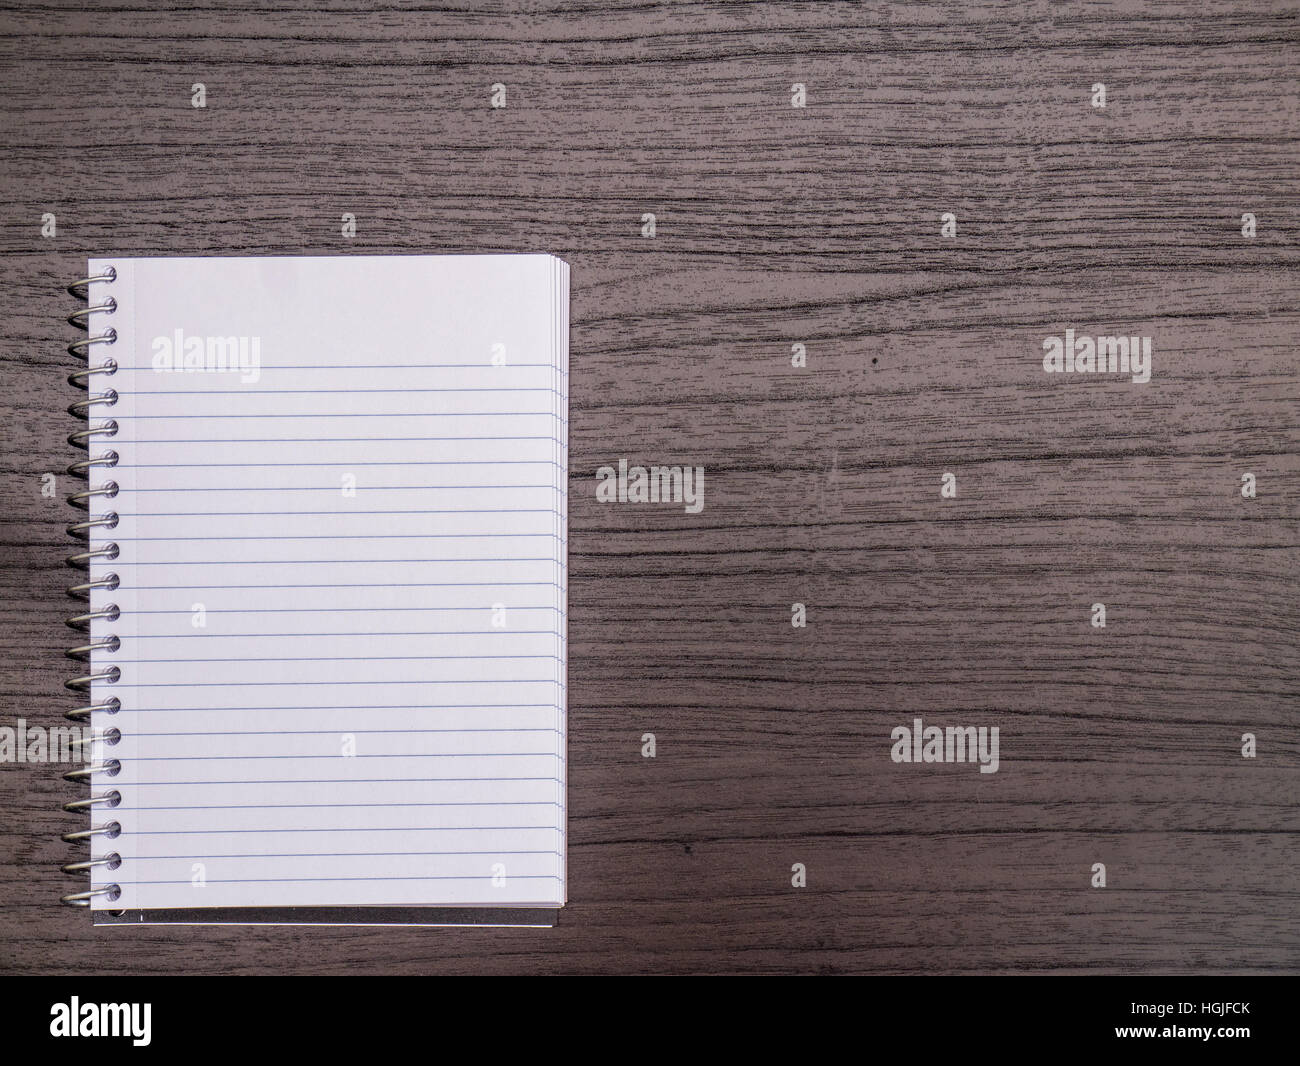 Scrivania di legno scuro e bianco per notebook a spirale Foto Stock